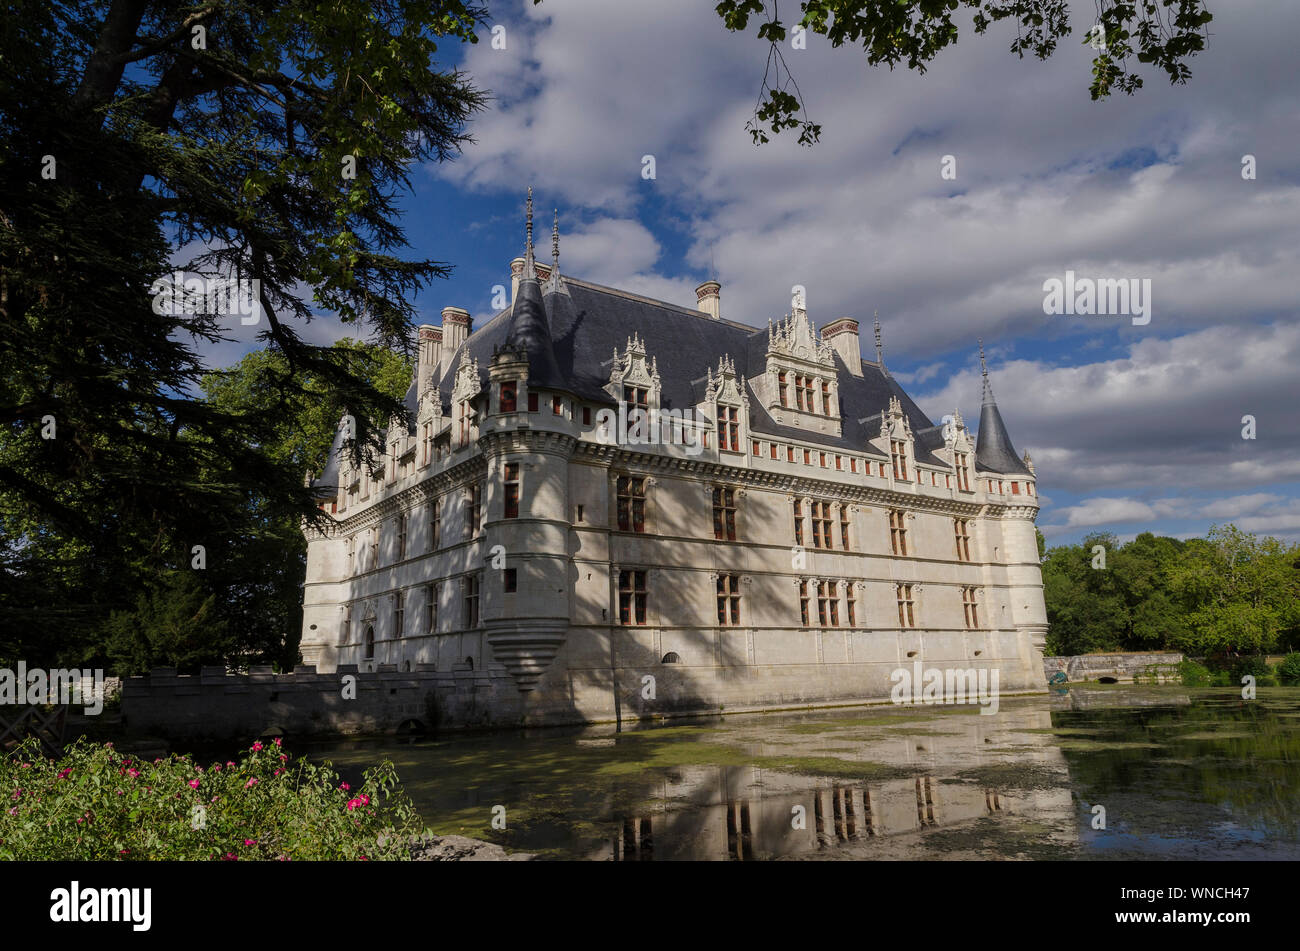 Chateau du Azay le Rideau Stock Photo